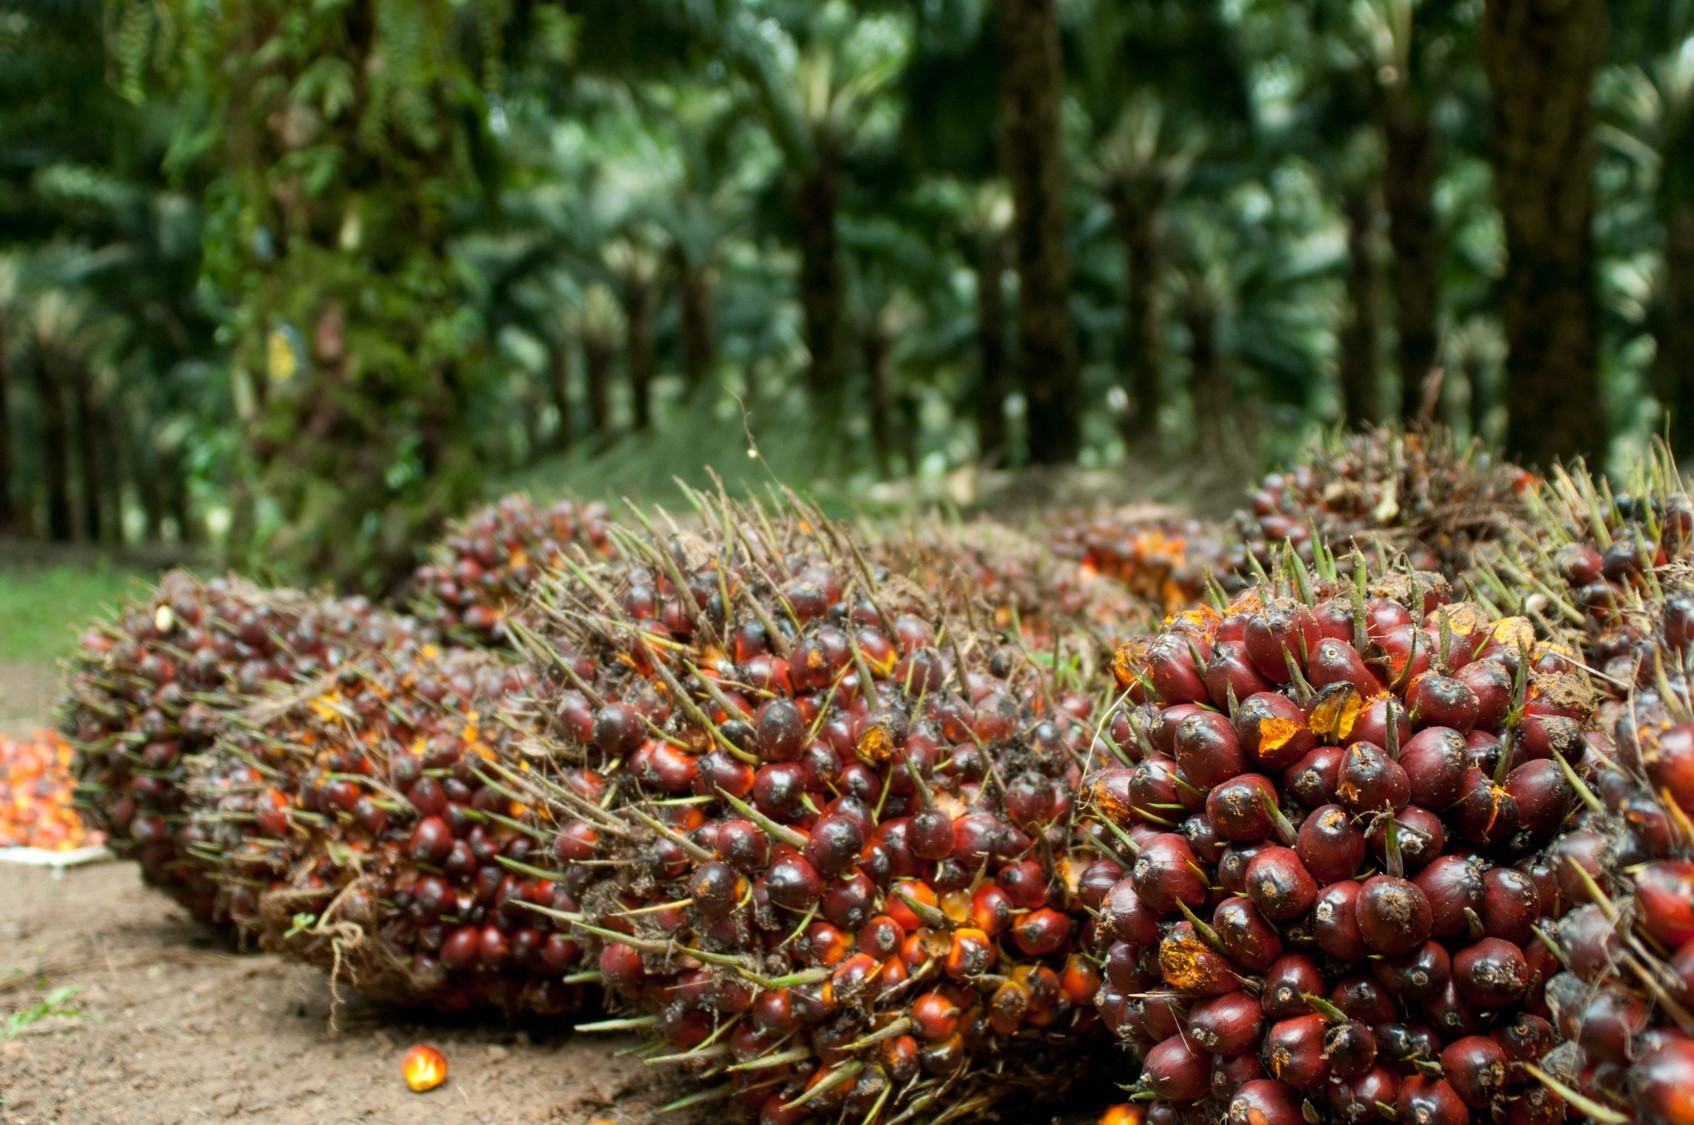 Harga Minyak Mentah Sawit Naik Tipis. Sinar Mas Replanting Perdana di Riau